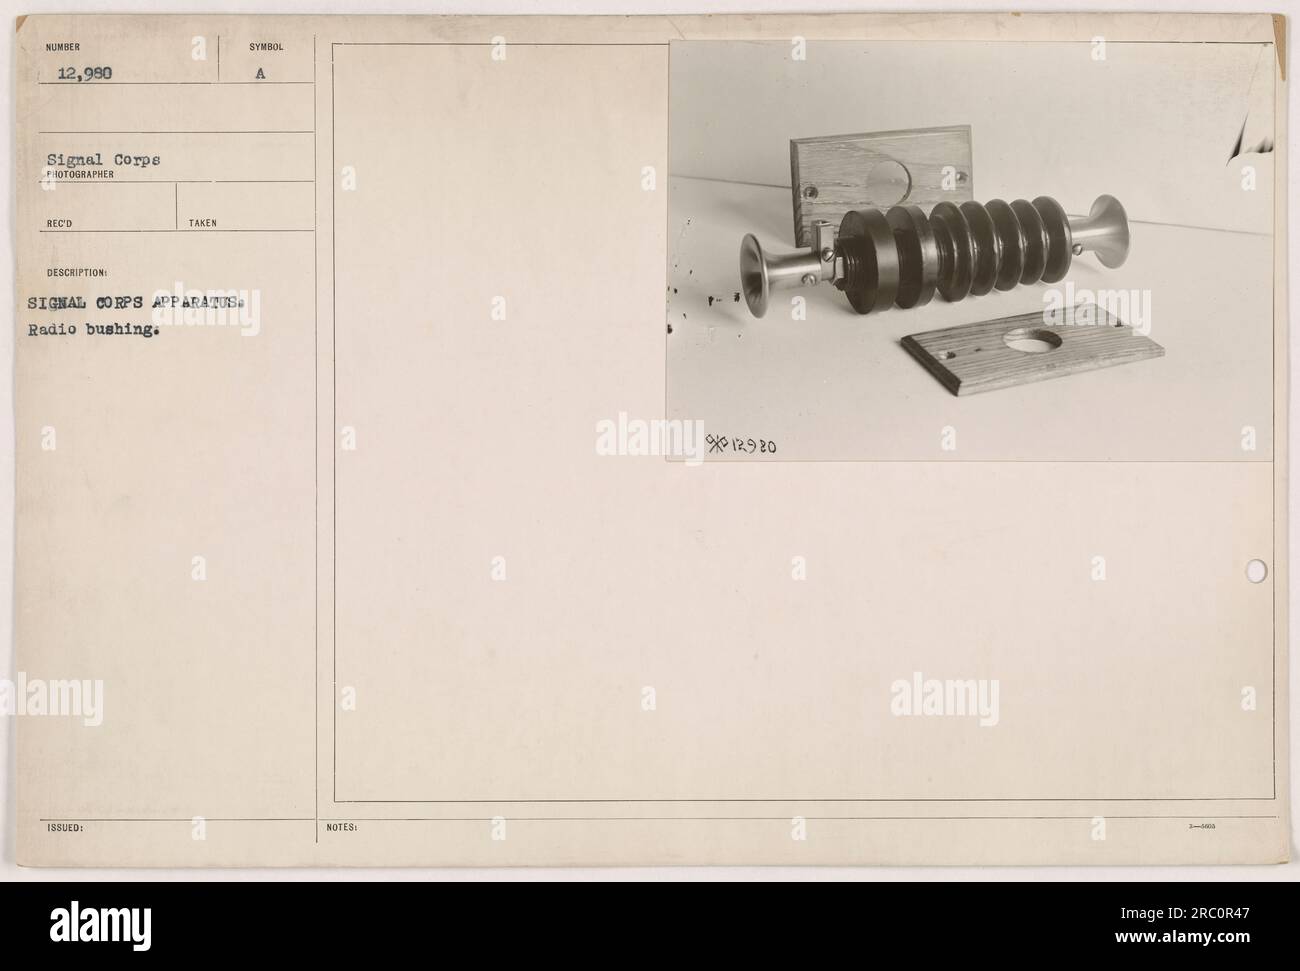 Questa immagine mostra una boccola radio, che faceva parte dell'apparato del Signal Corps usato durante la prima guerra mondiale. La foto è stata scattata dal fotografo Reco e gli è stato dato il numero di identificazione 12.980. Foto Stock